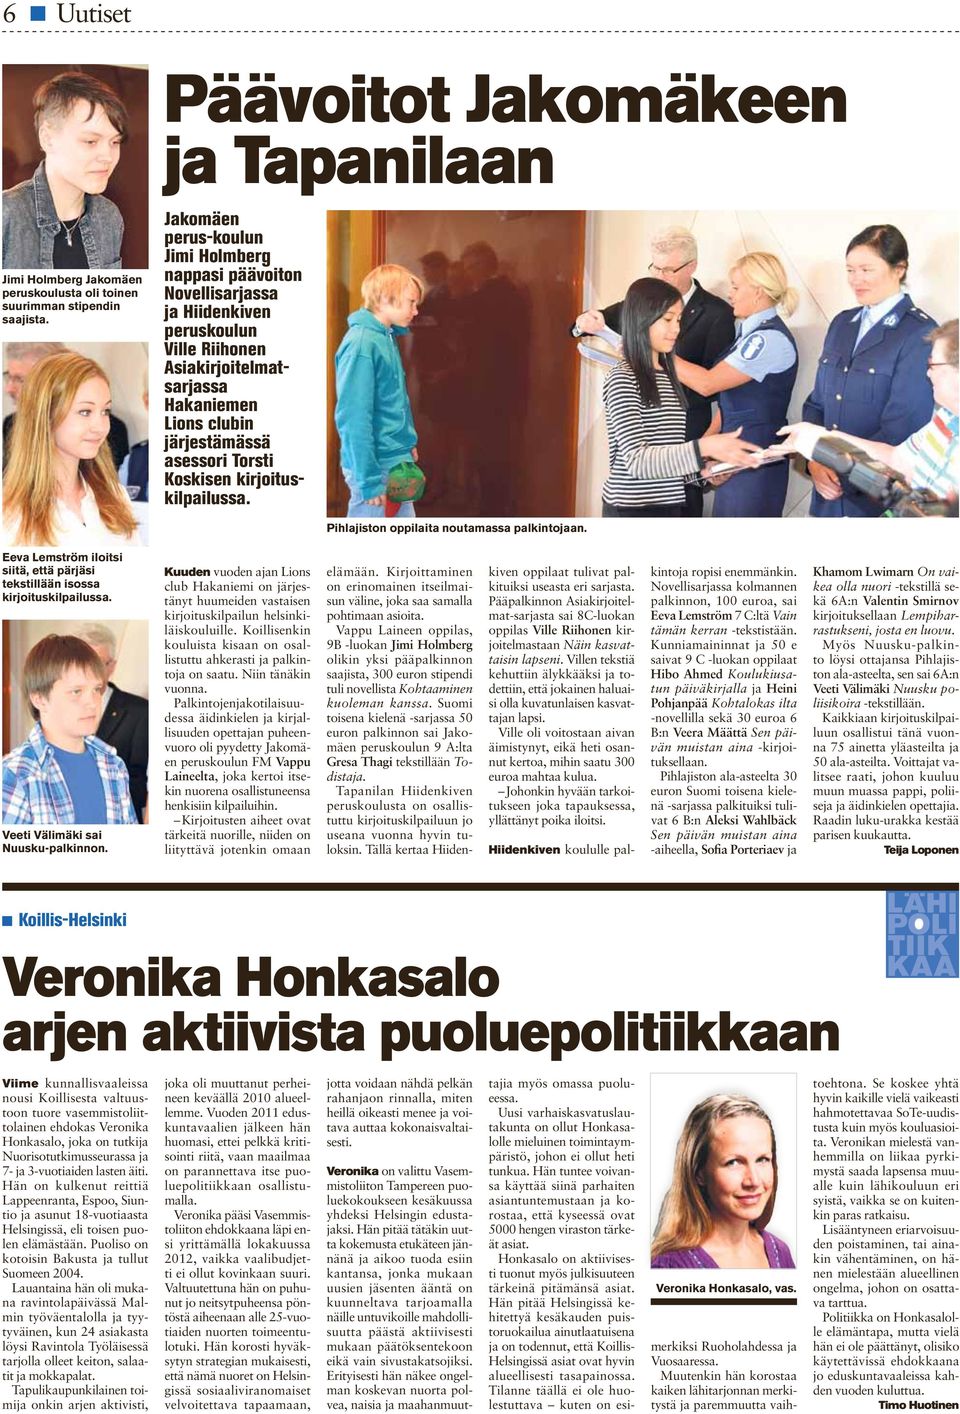 kirjoituskilpailussa. Pihlajiston oppilaita noutamassa palkintojaan. Eeva Lemström iloitsi siitä, että pärjäsi tekstillään isossa kirjoituskilpailussa. Veeti Välimäki sai Nuusku-palkinnon.